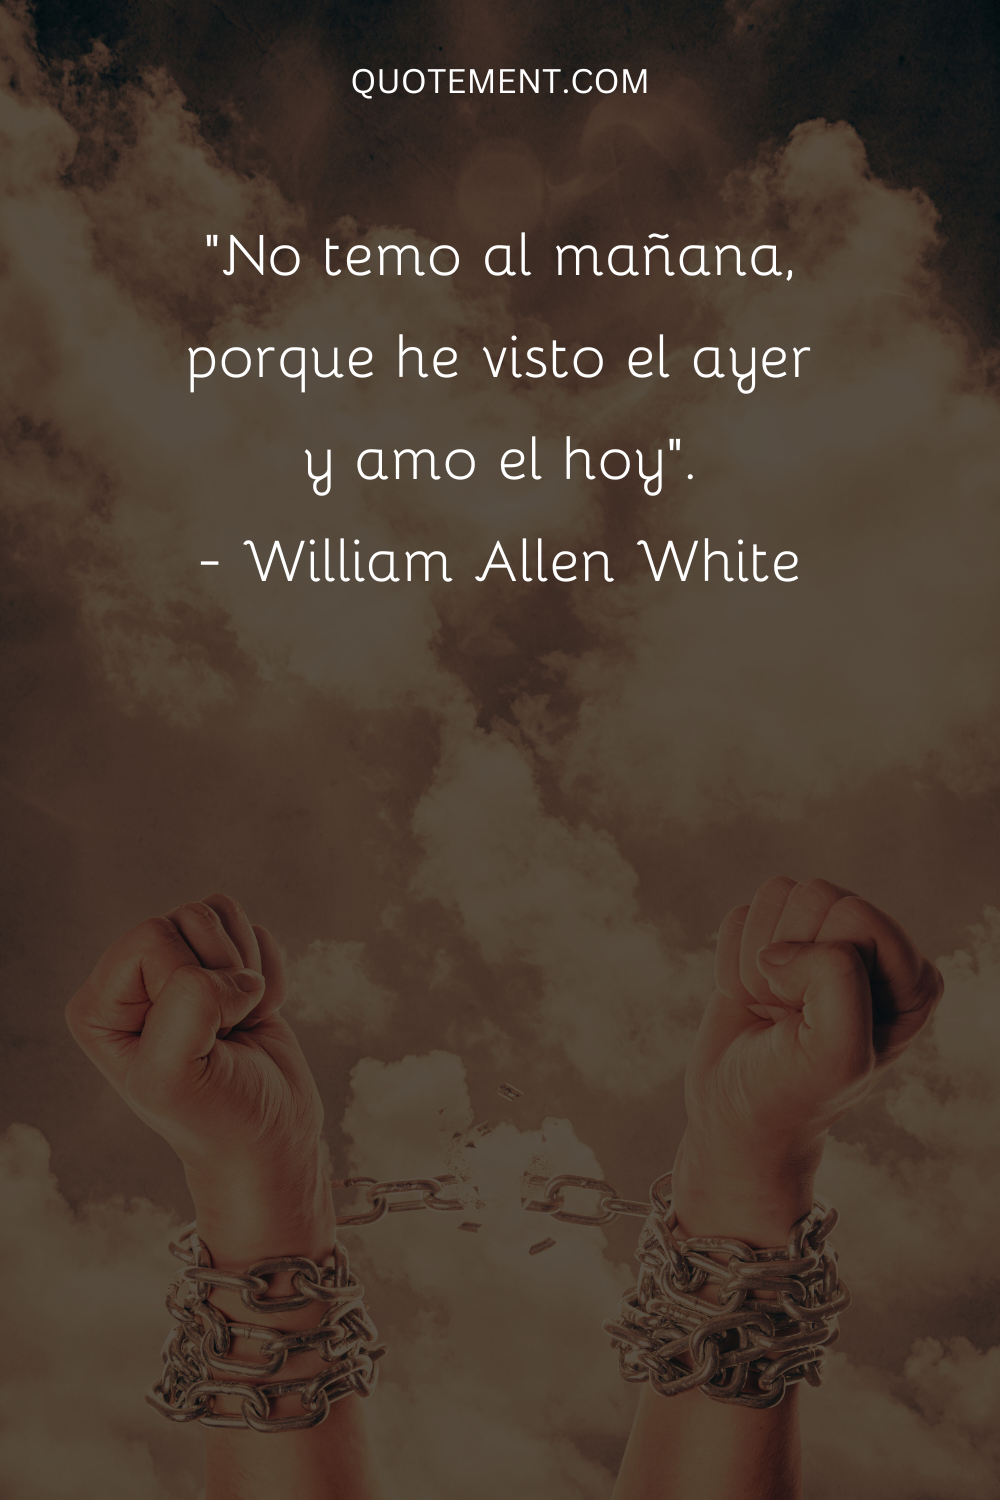 "No temo al mañana, porque he visto el ayer y amo el hoy". - William Allen White